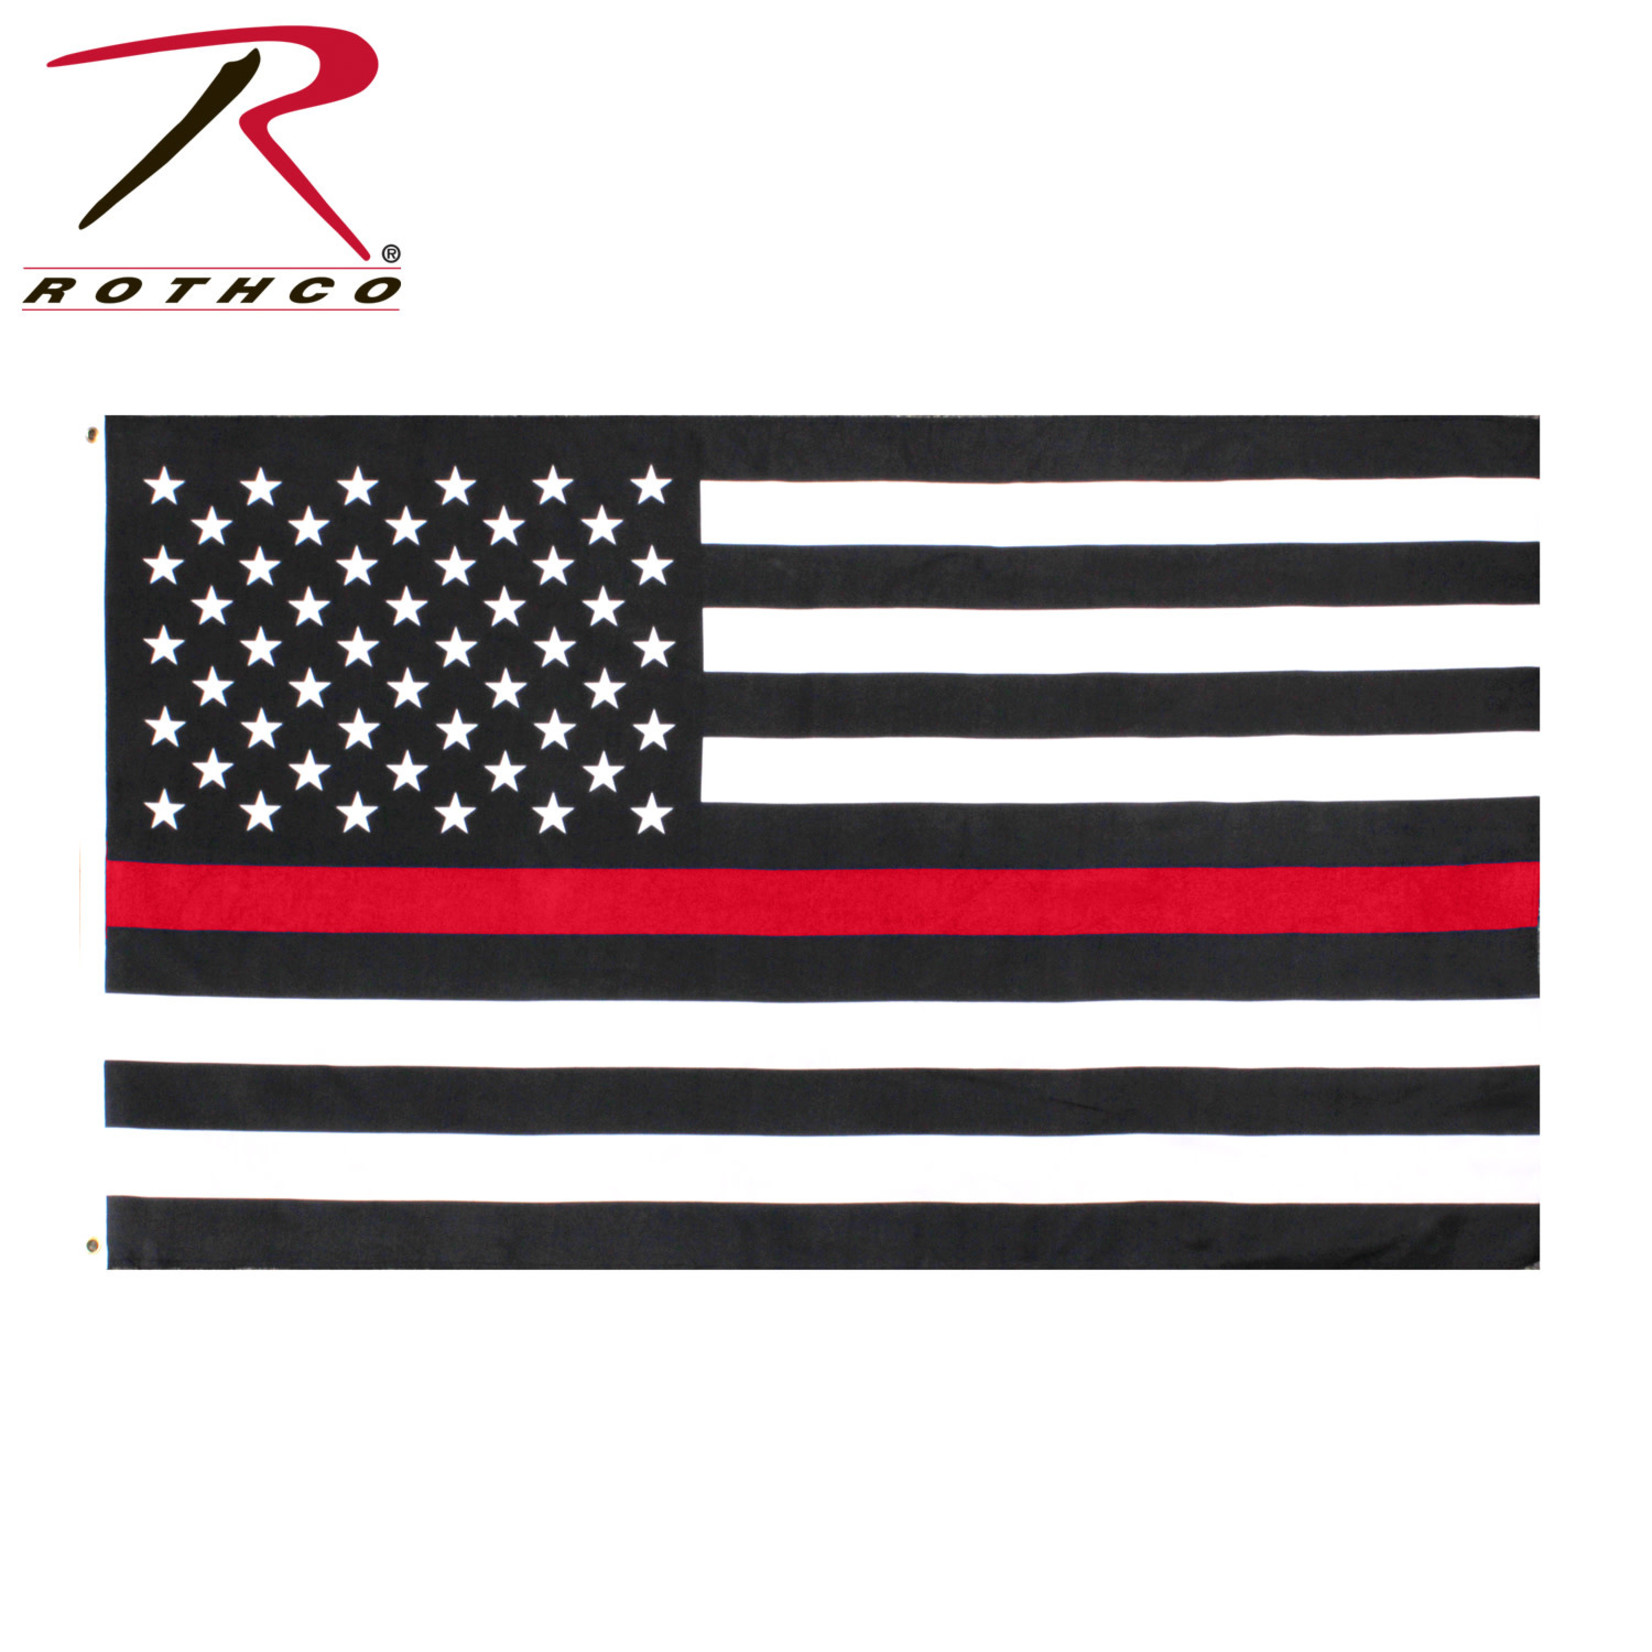 Rothco Rothco Thin Red Line Flag - 3' x 5'